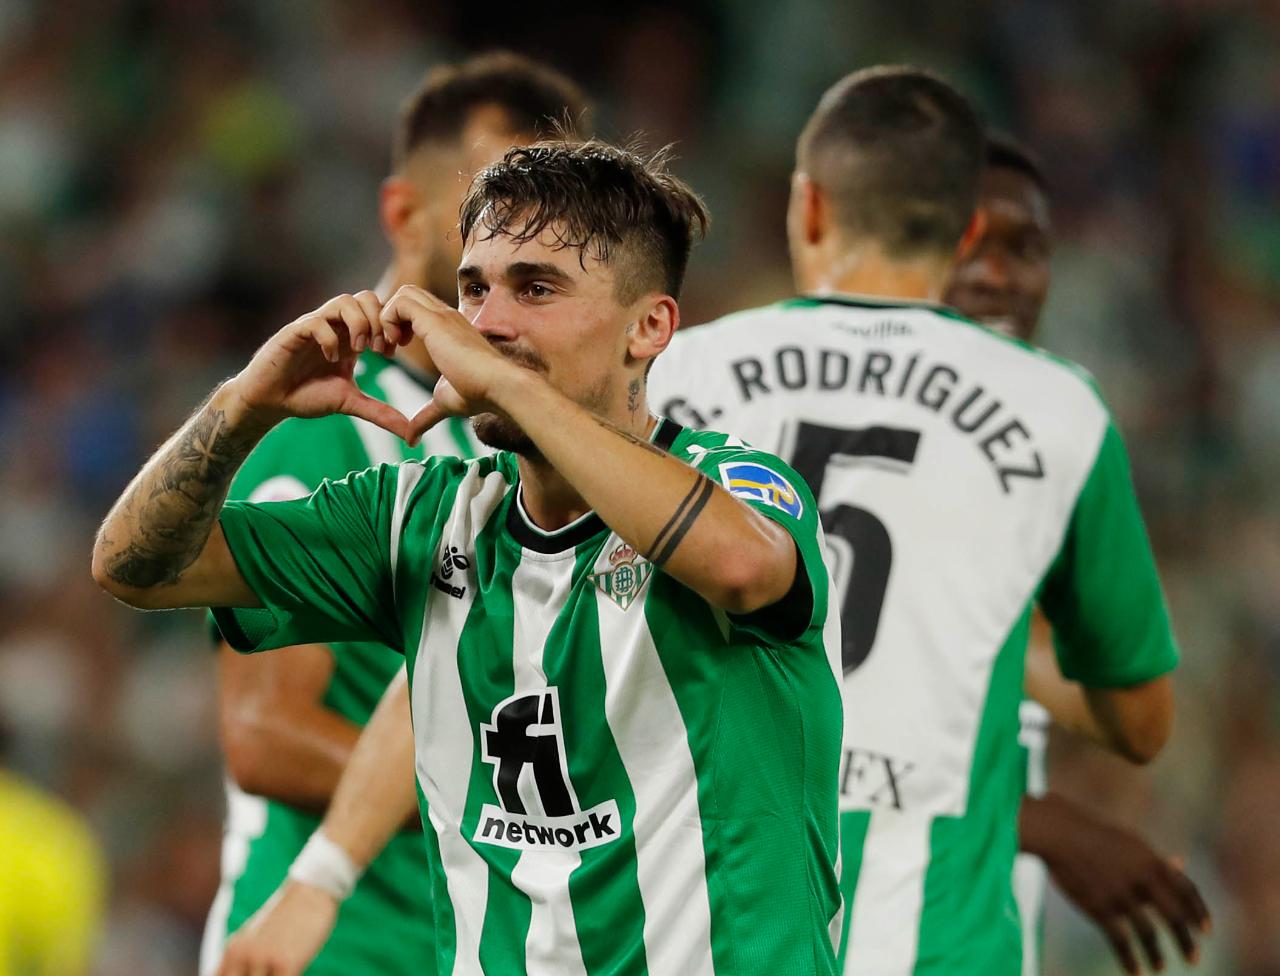 Clásico flojo Escalera El Betis se coloca tercero gracias a un gol de Rodri en el Villamarín -  LaLiga Santander - COPE